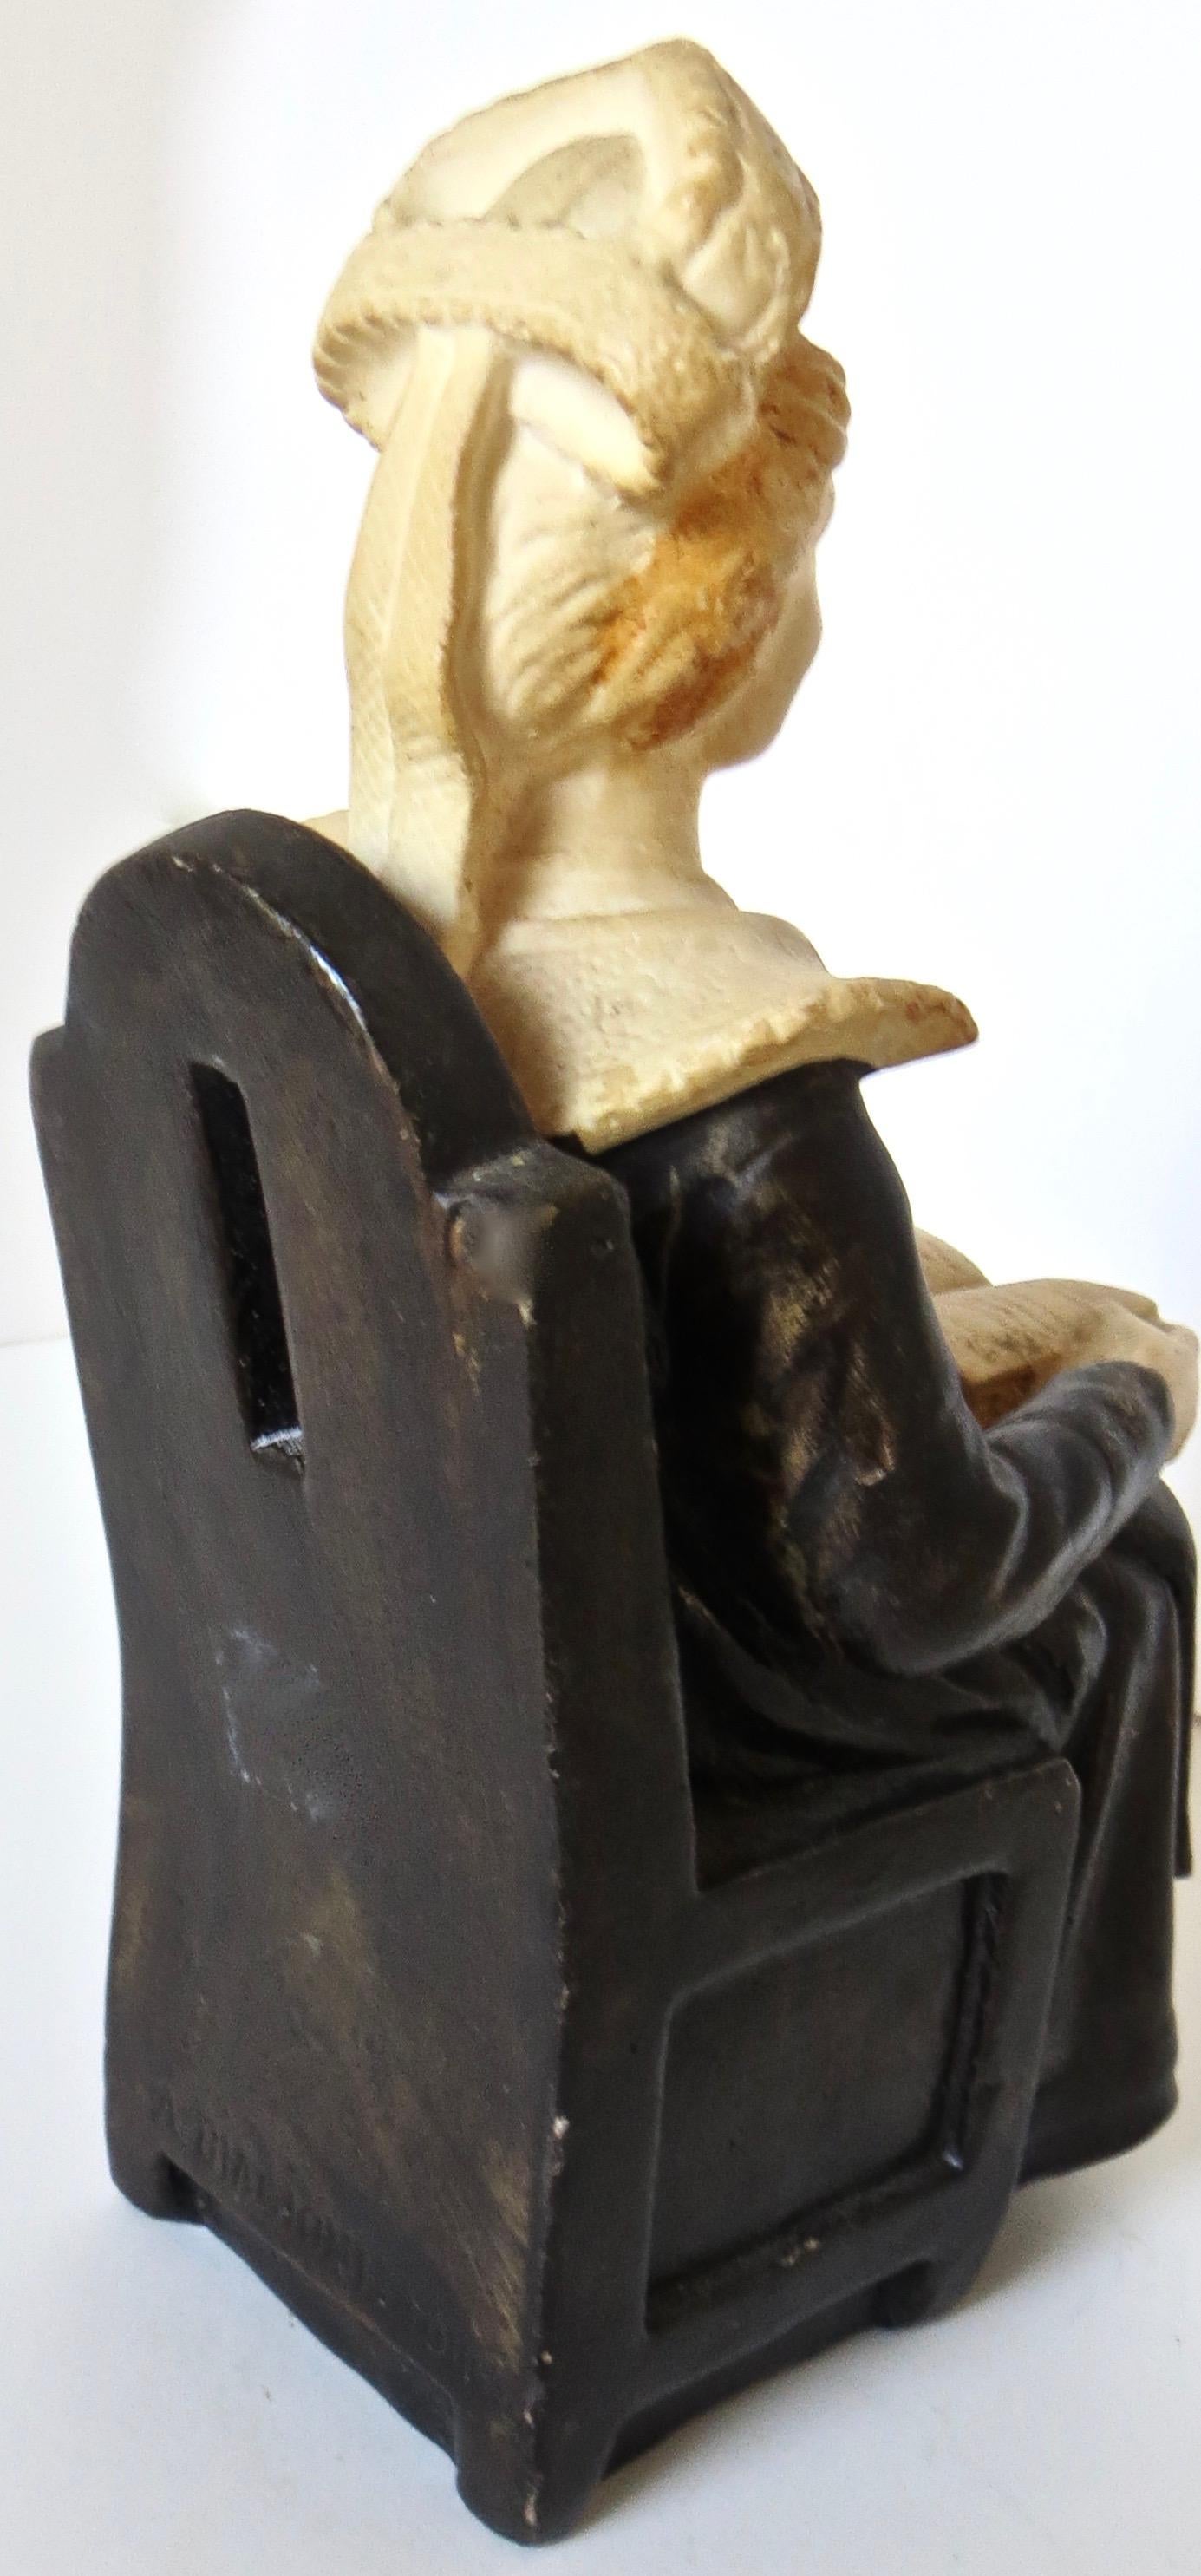 biagioni sculpteur